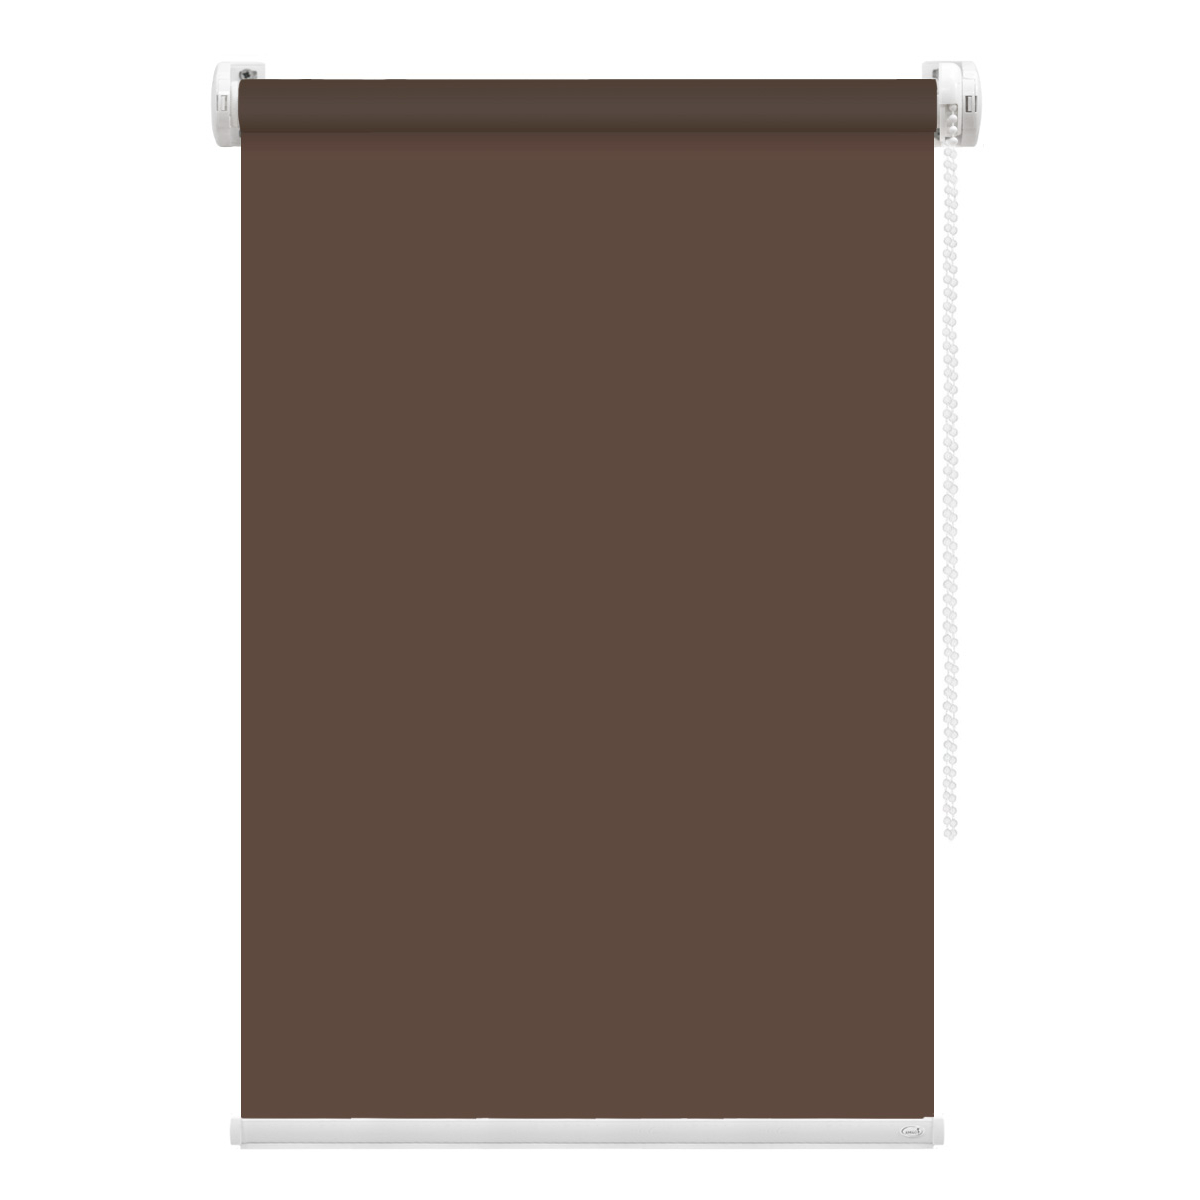 Рулонная штора FixLine Amigo Basic коричневая 55х160 см рулонная штора fixline amigo basic коричневая 65х160 см